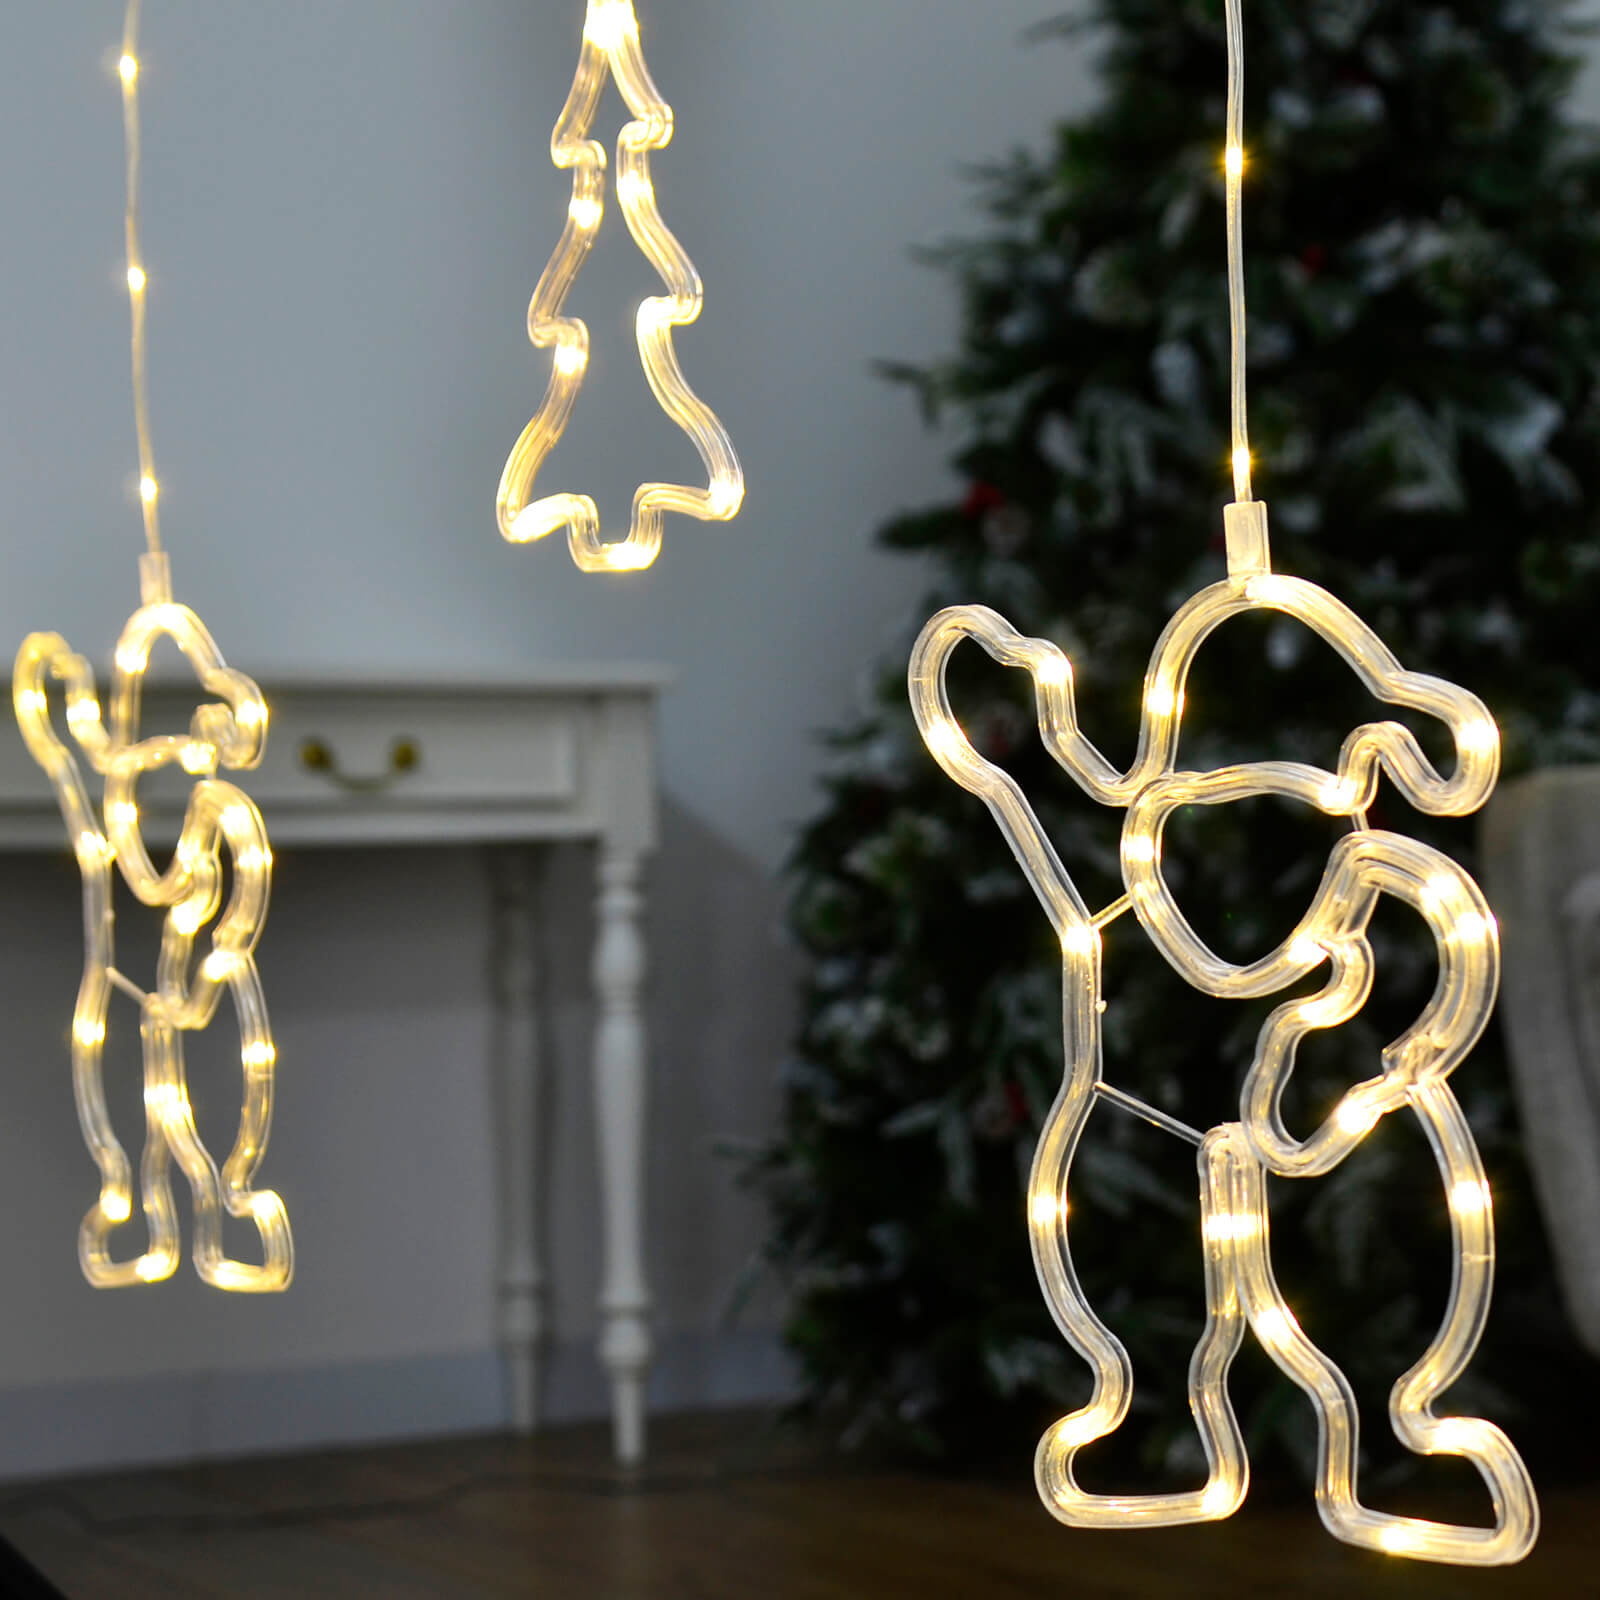 Mr Crimbo 5 String Curtain Light Christmas Decoration LED 1.2m - MrCrimbo.co.uk -XS7283 - -